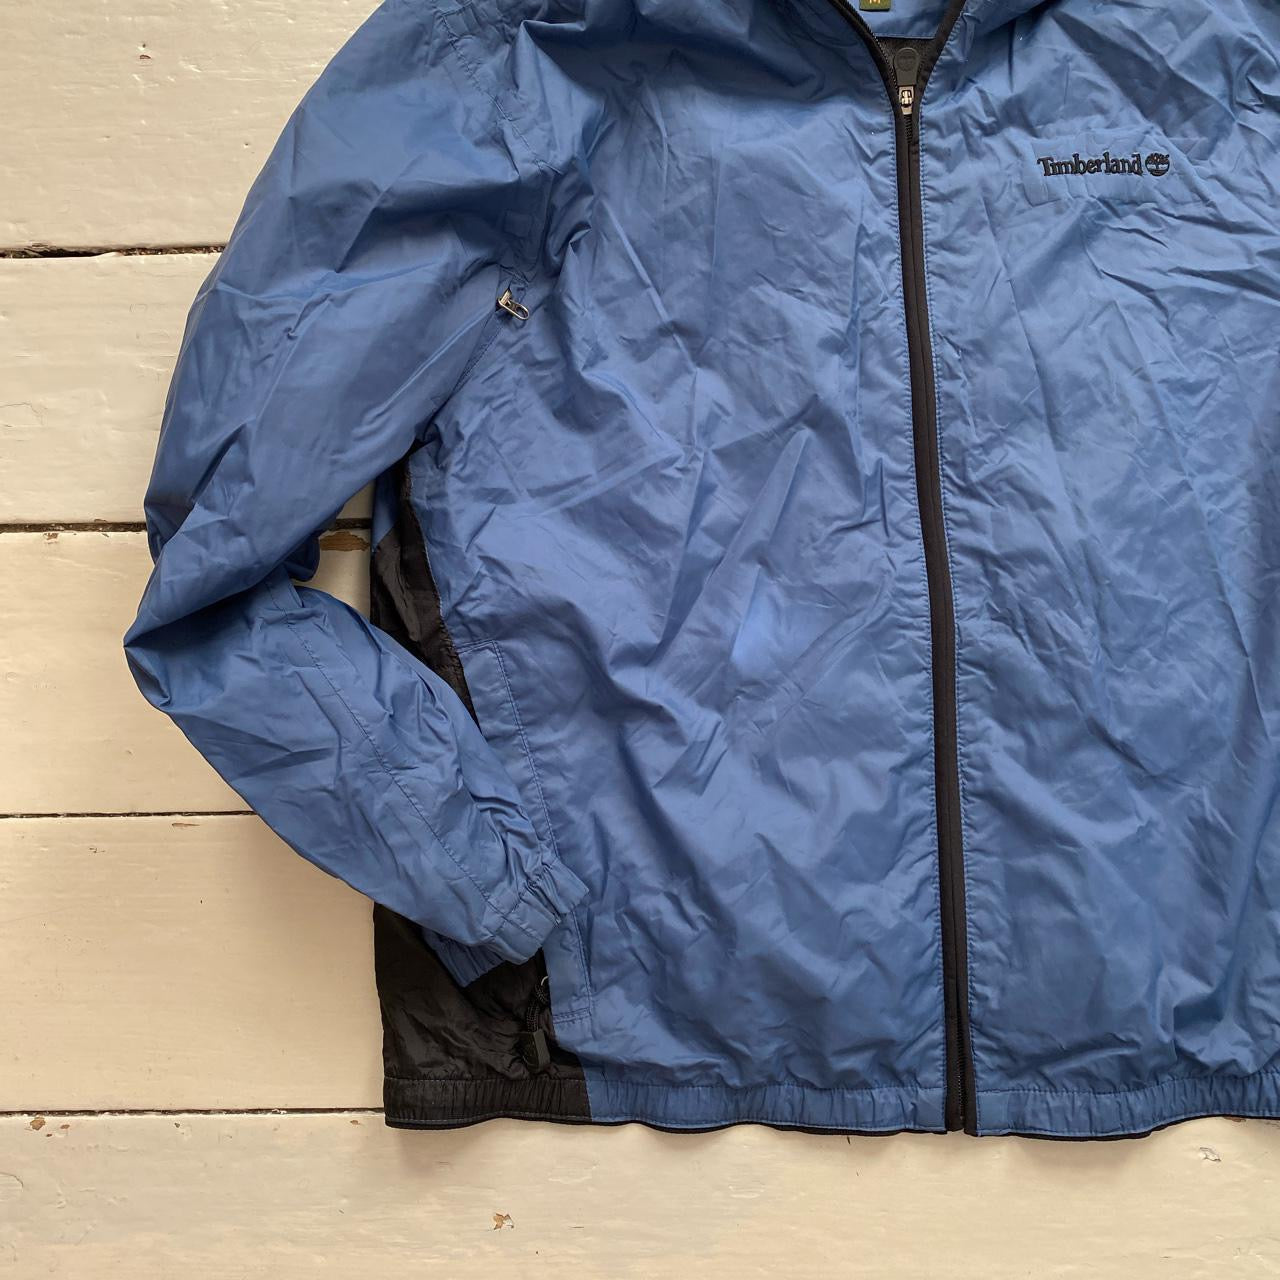 Timberland Hooded Windbreaker Jacket (Medium)